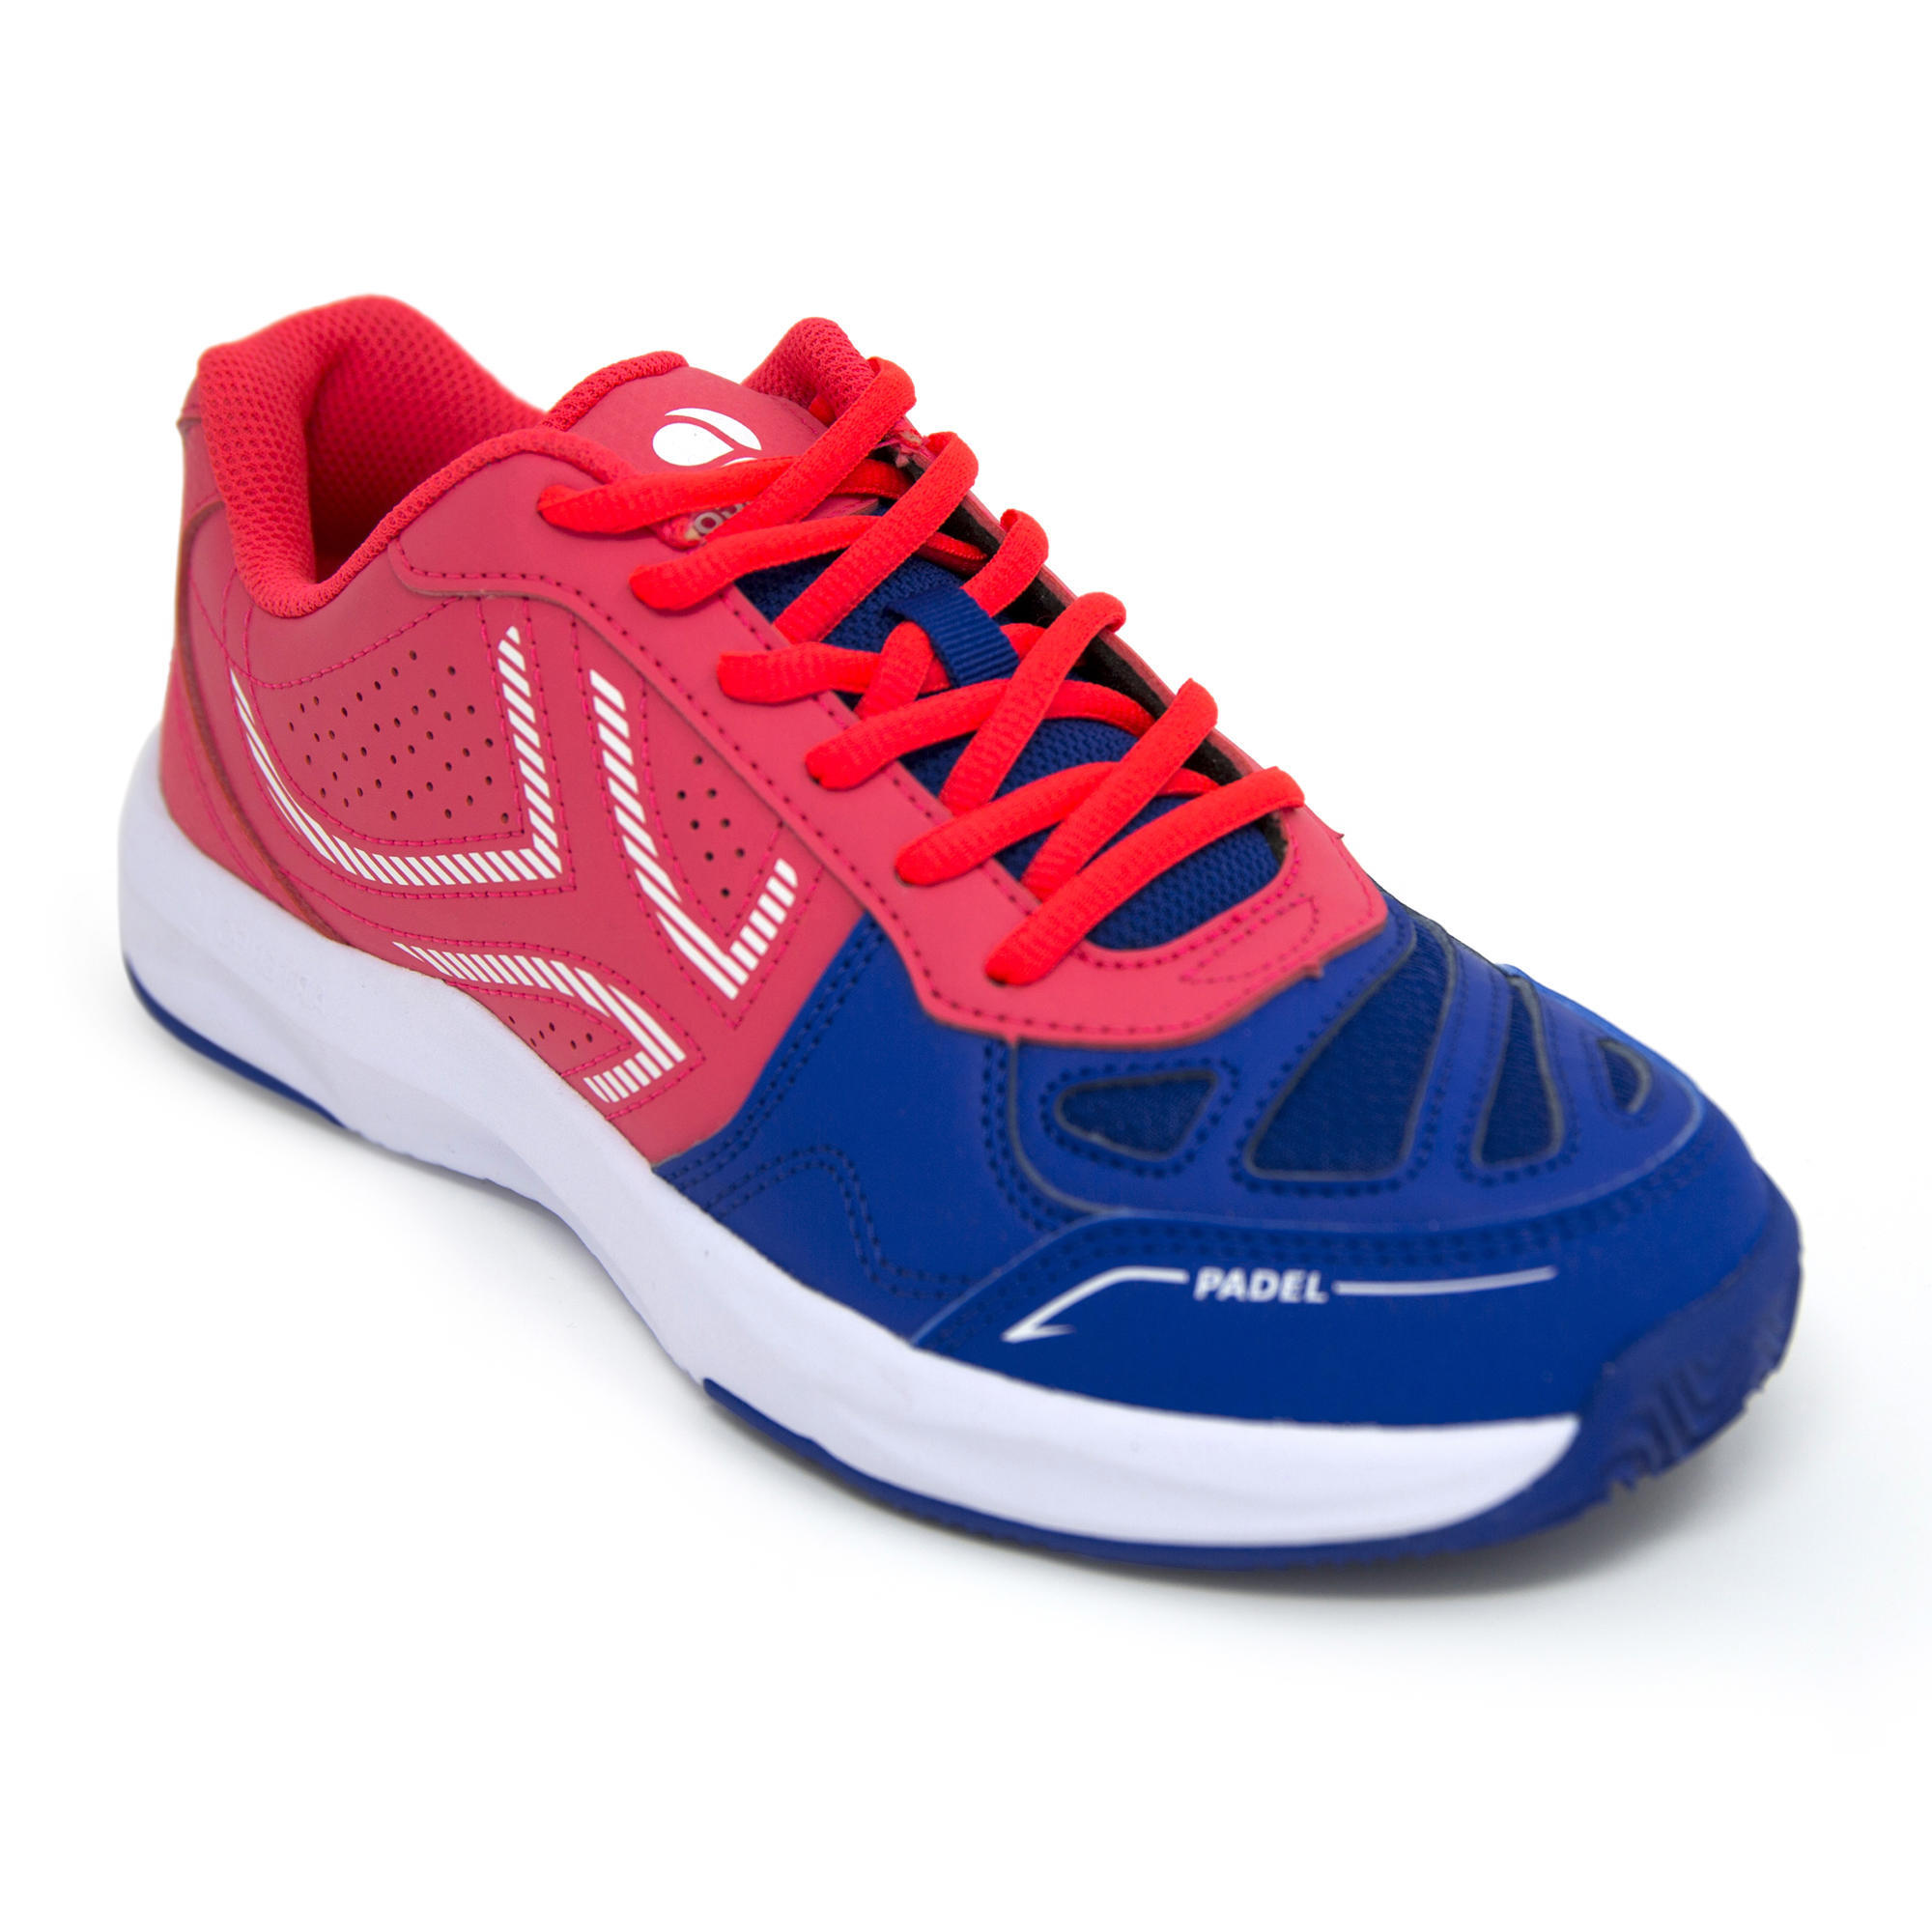 Обувь для паделя PS 190 спортивная обувь розовый/синий ARTENGO, неоновый кораллово-розовый/морской синий